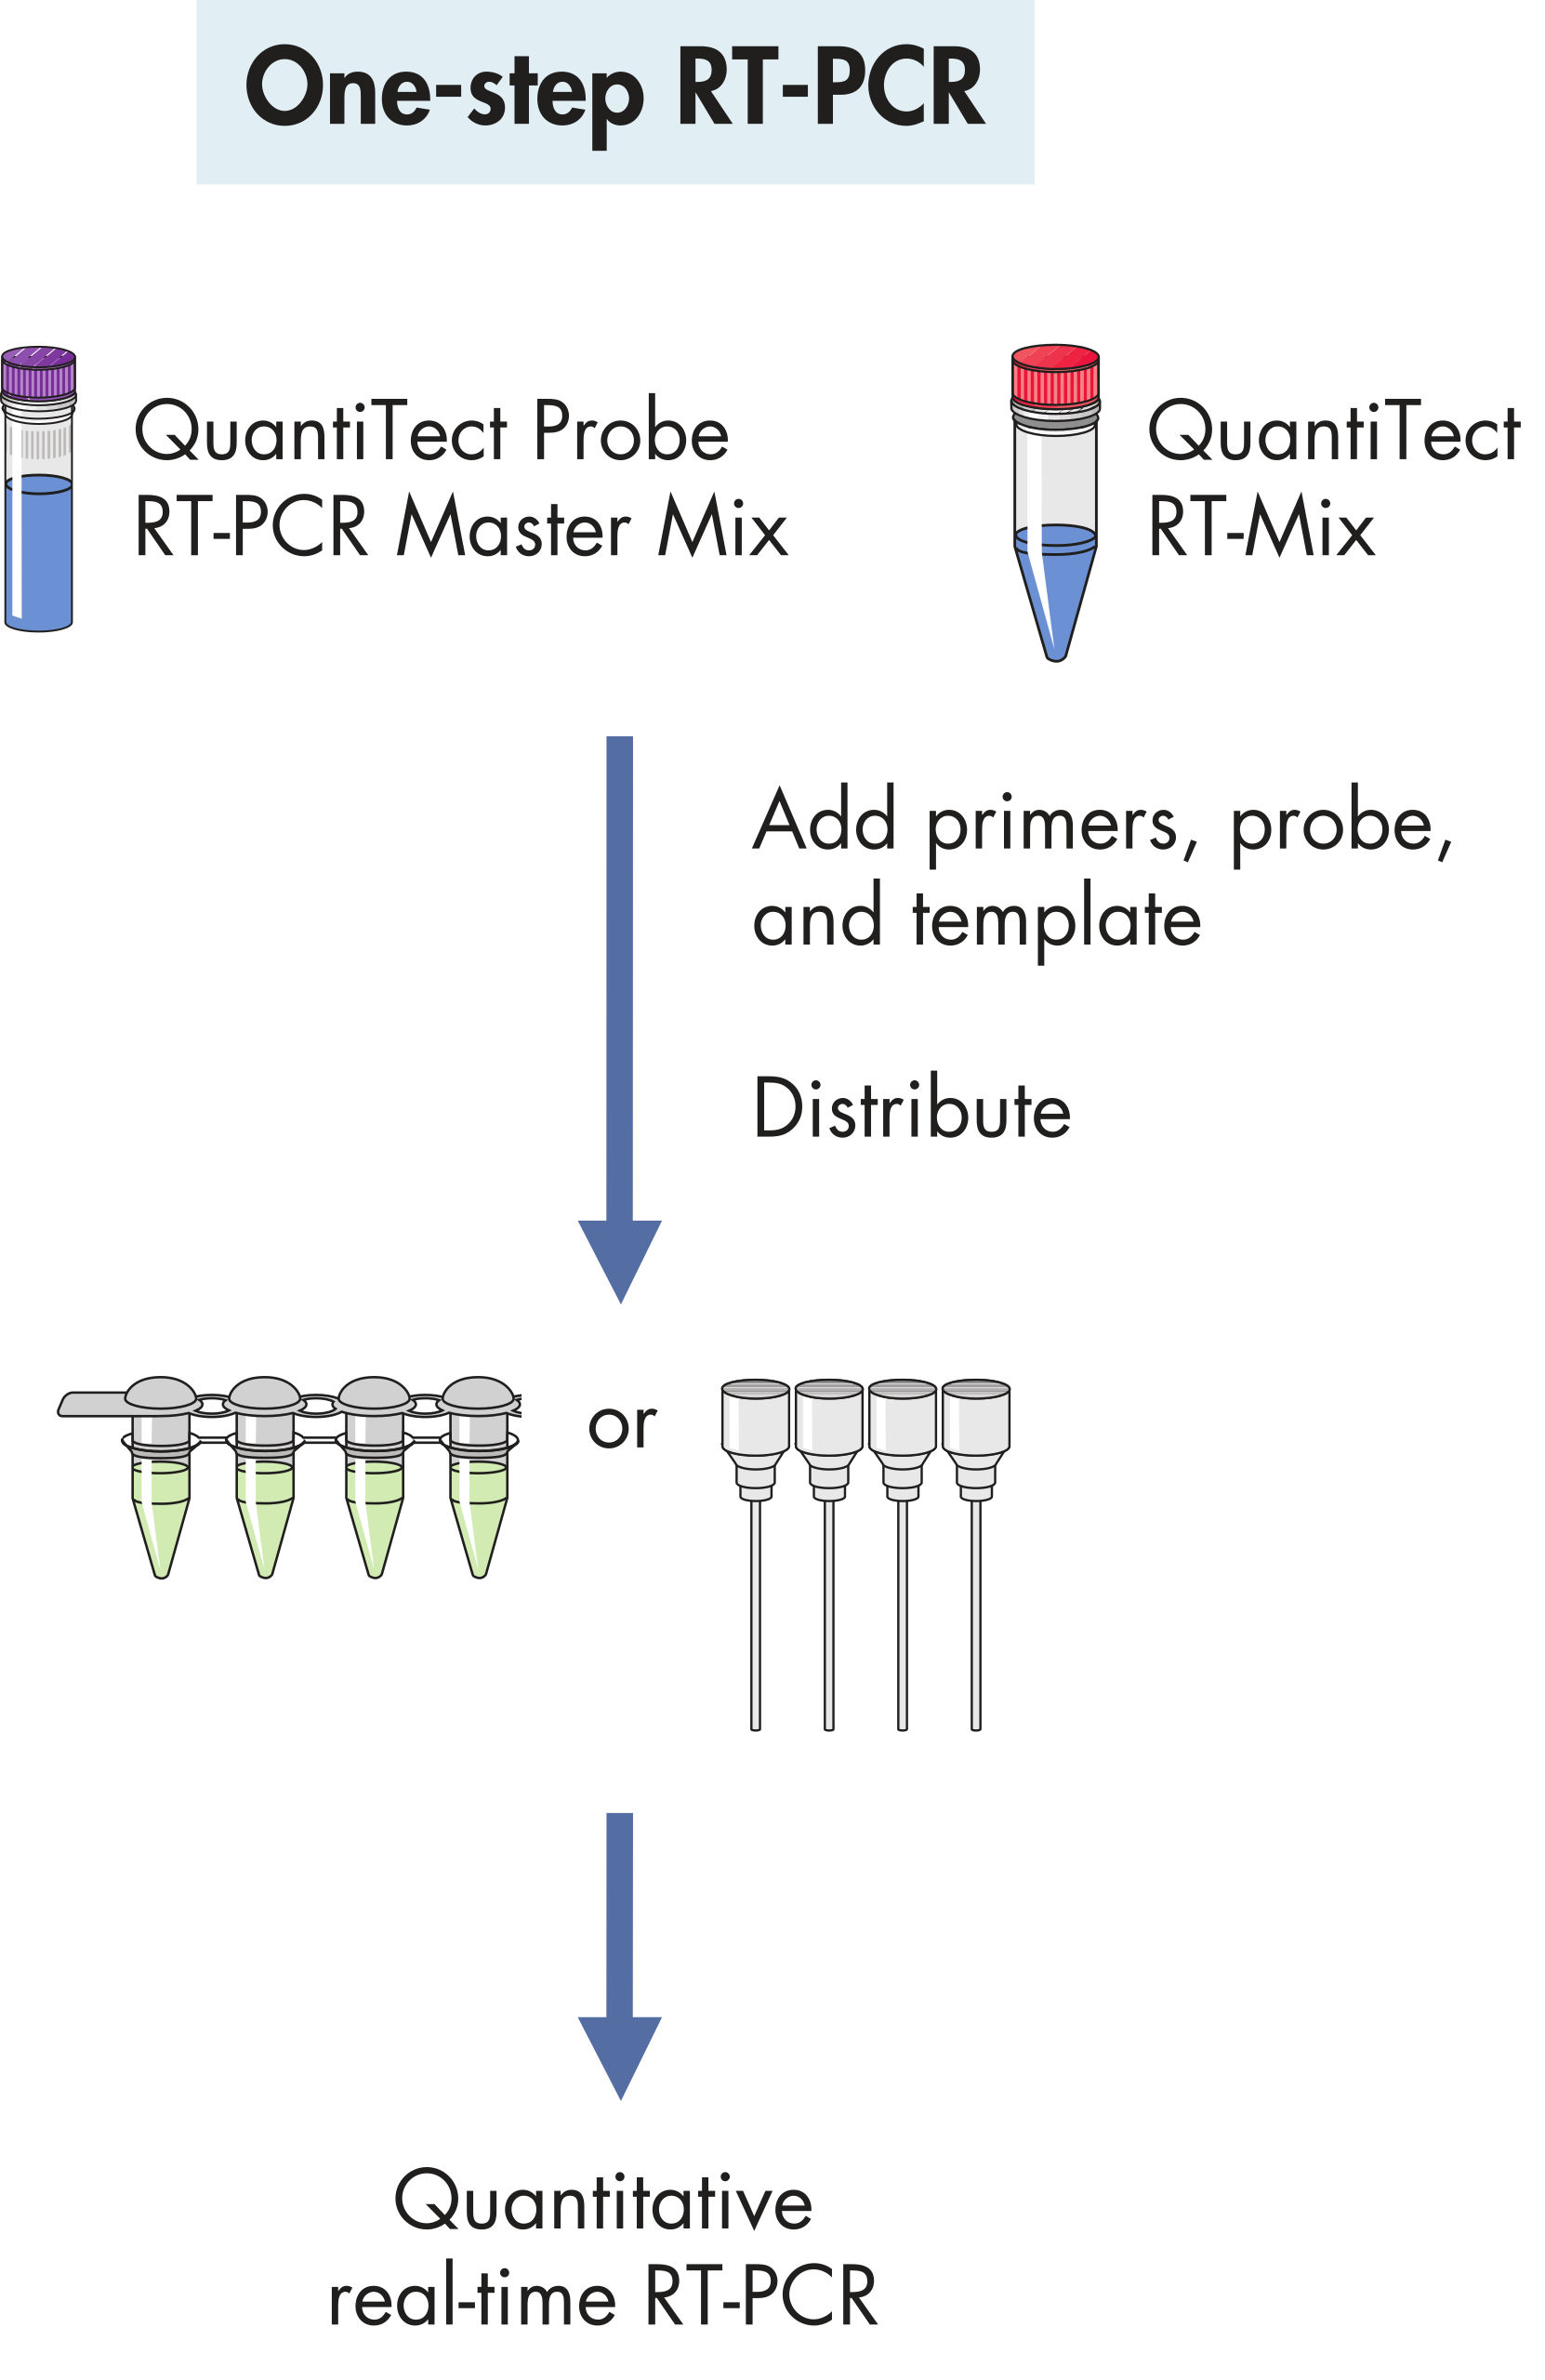 QuantiTect RT-PCR Kits